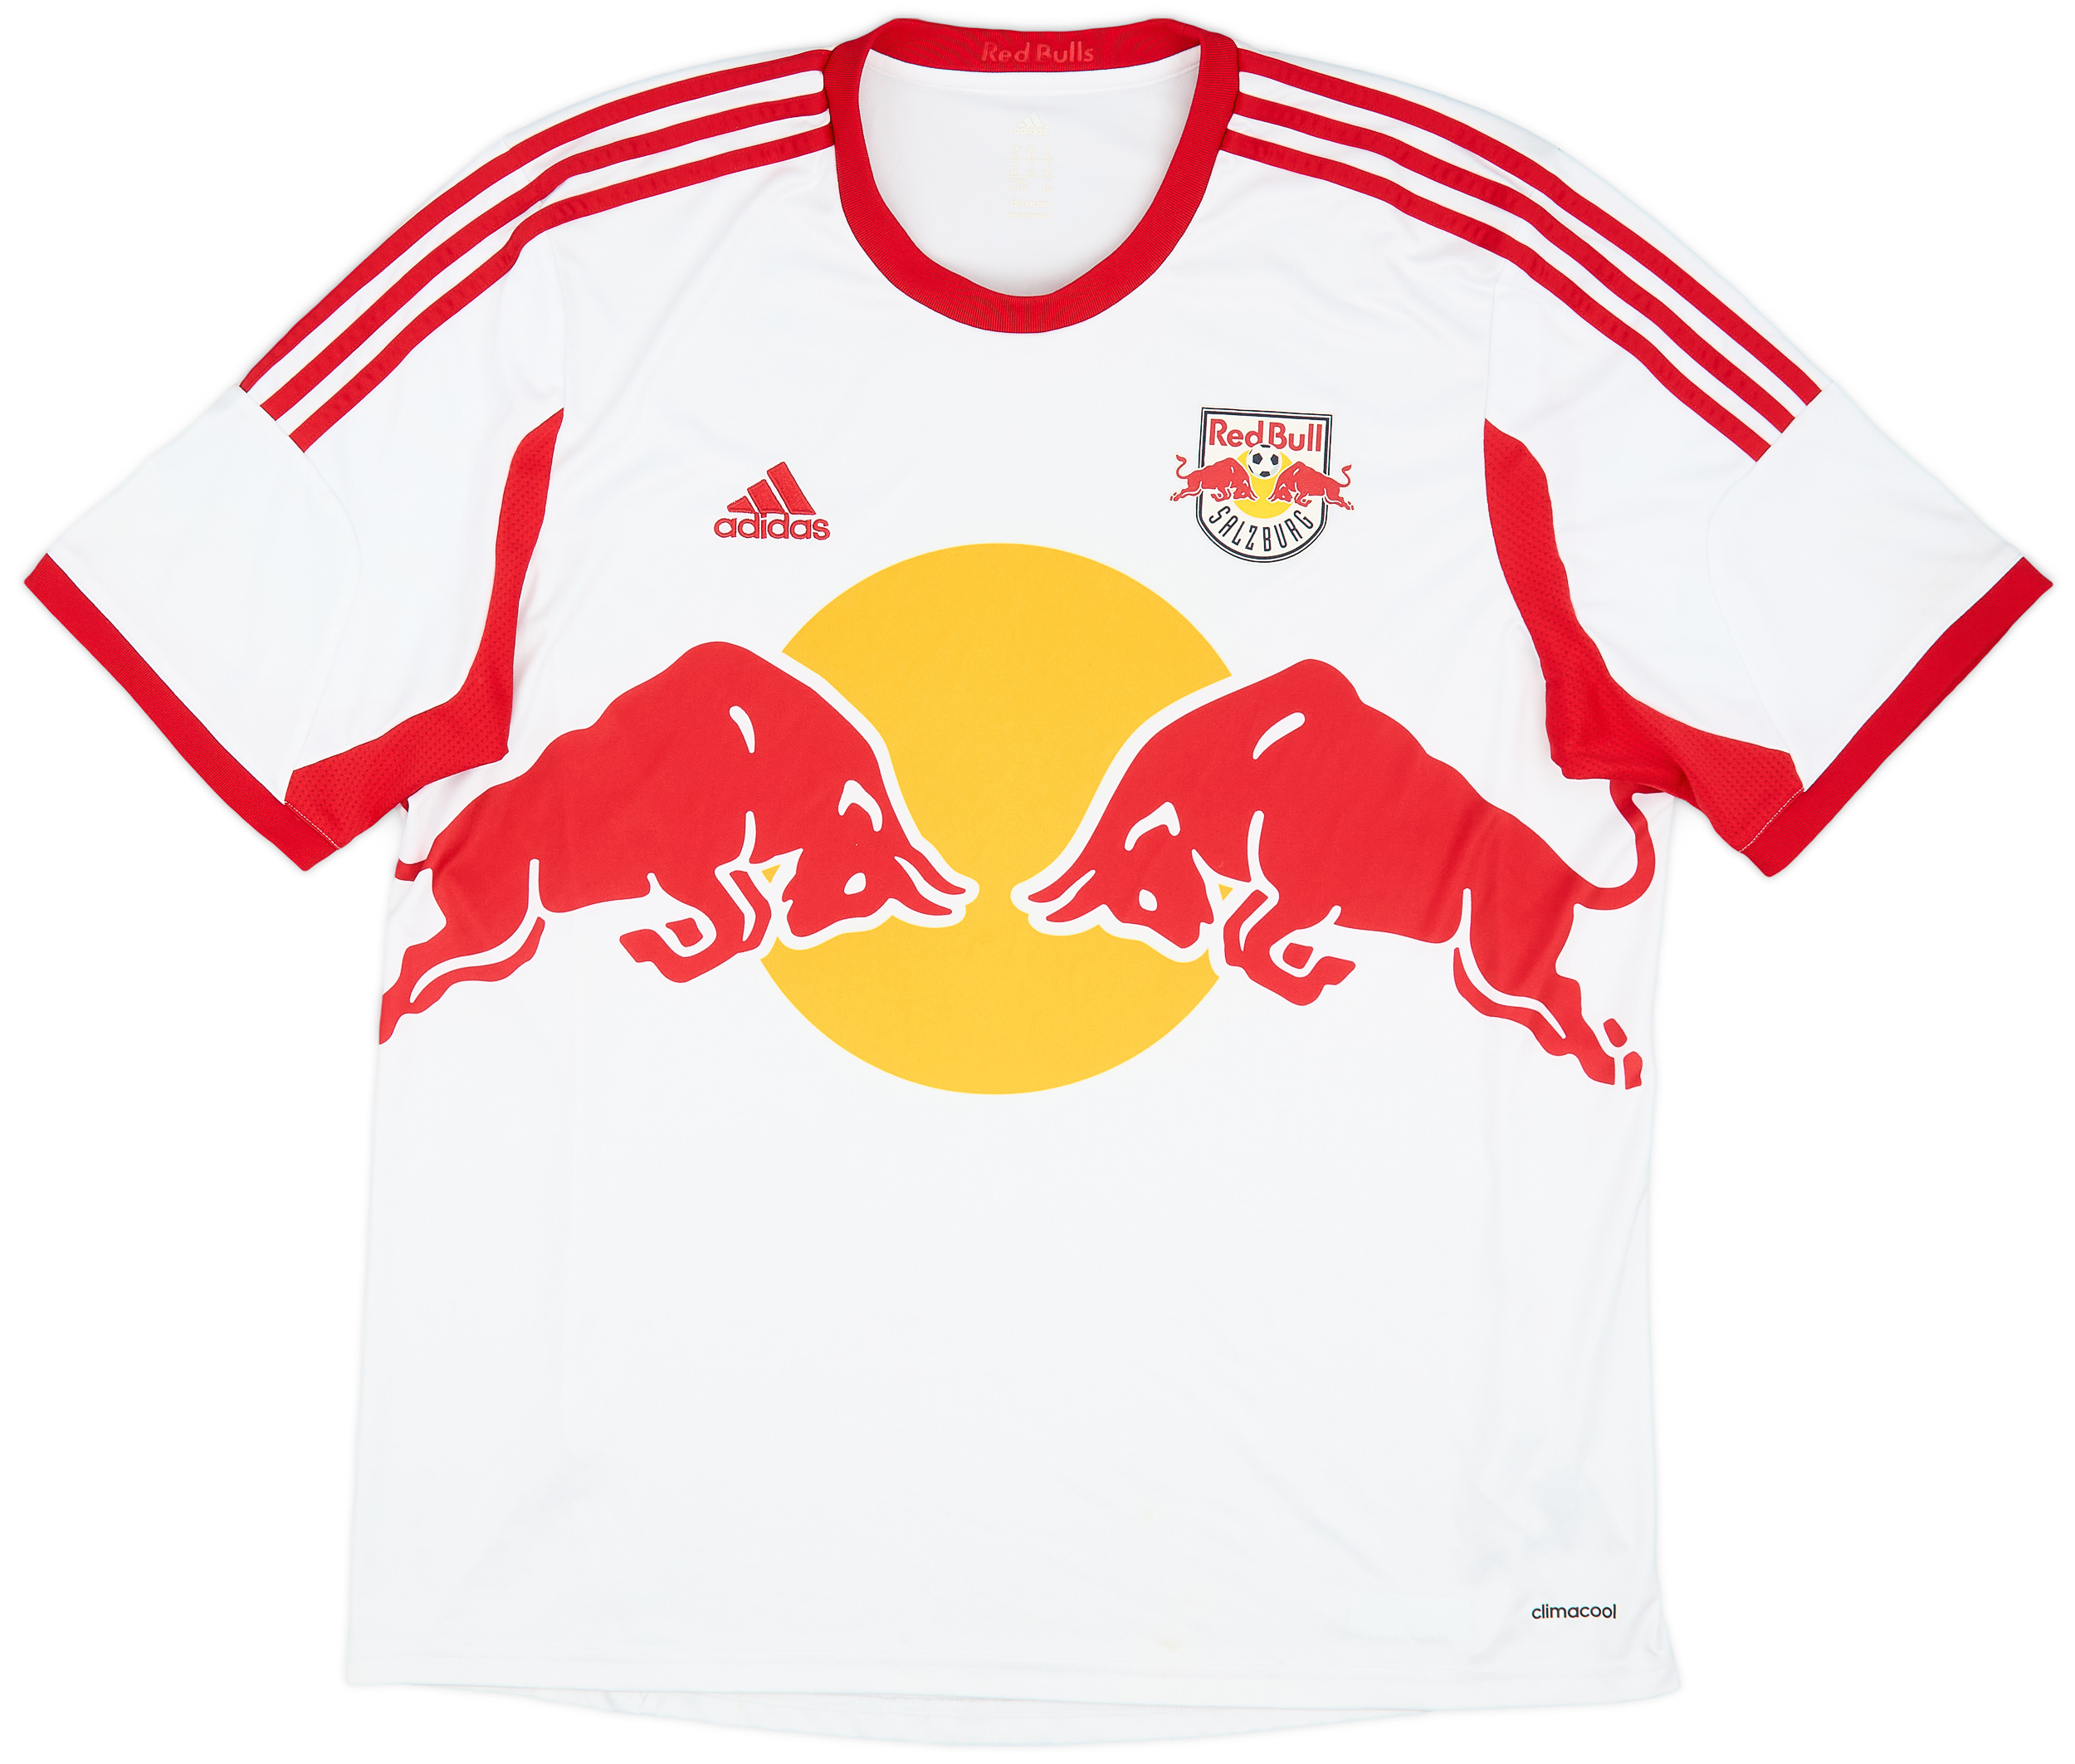 2013-14 Red Bull Salzburg Home Shirt - 8/10 - ()